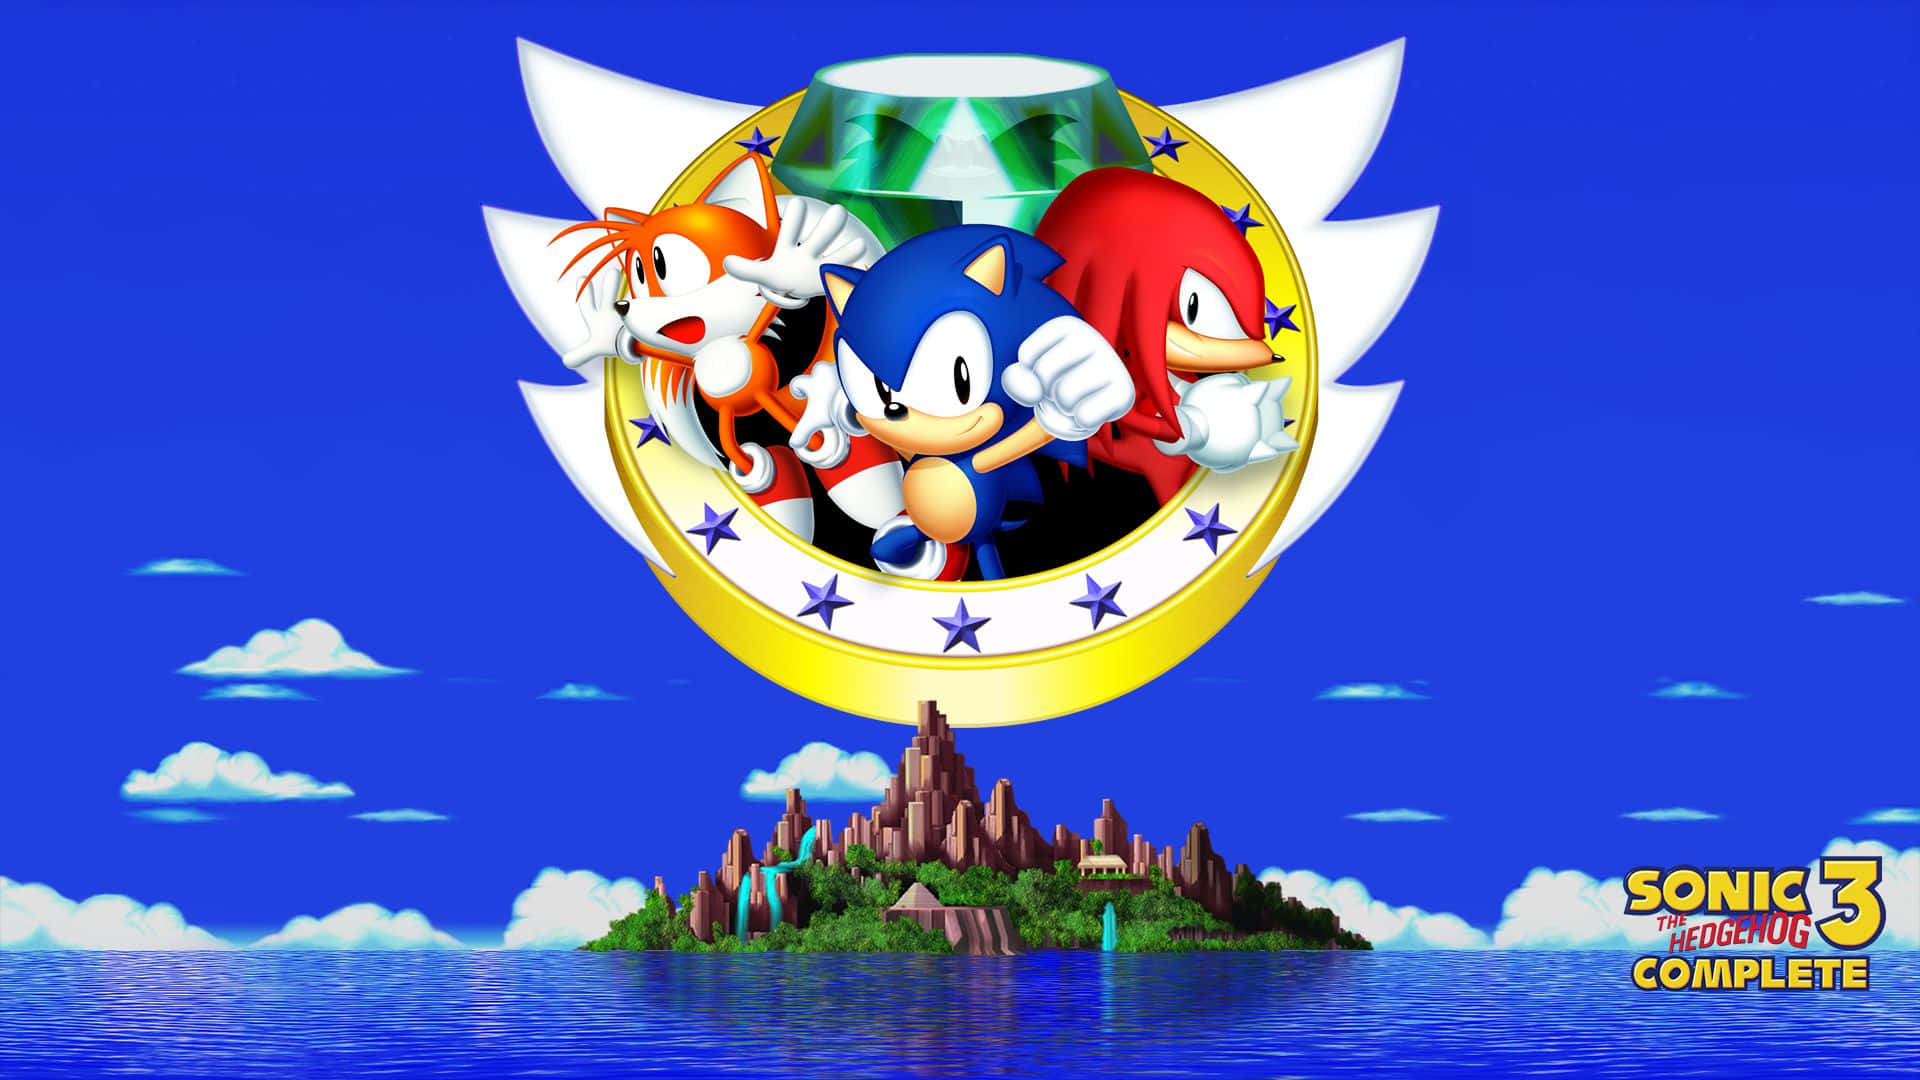 Sonicthe Hedgehog, Sonic The Hedgehog, Sonic The Hedgehog, Sonic The Hedgehog, Sonic The Hedgehog Wallpaper